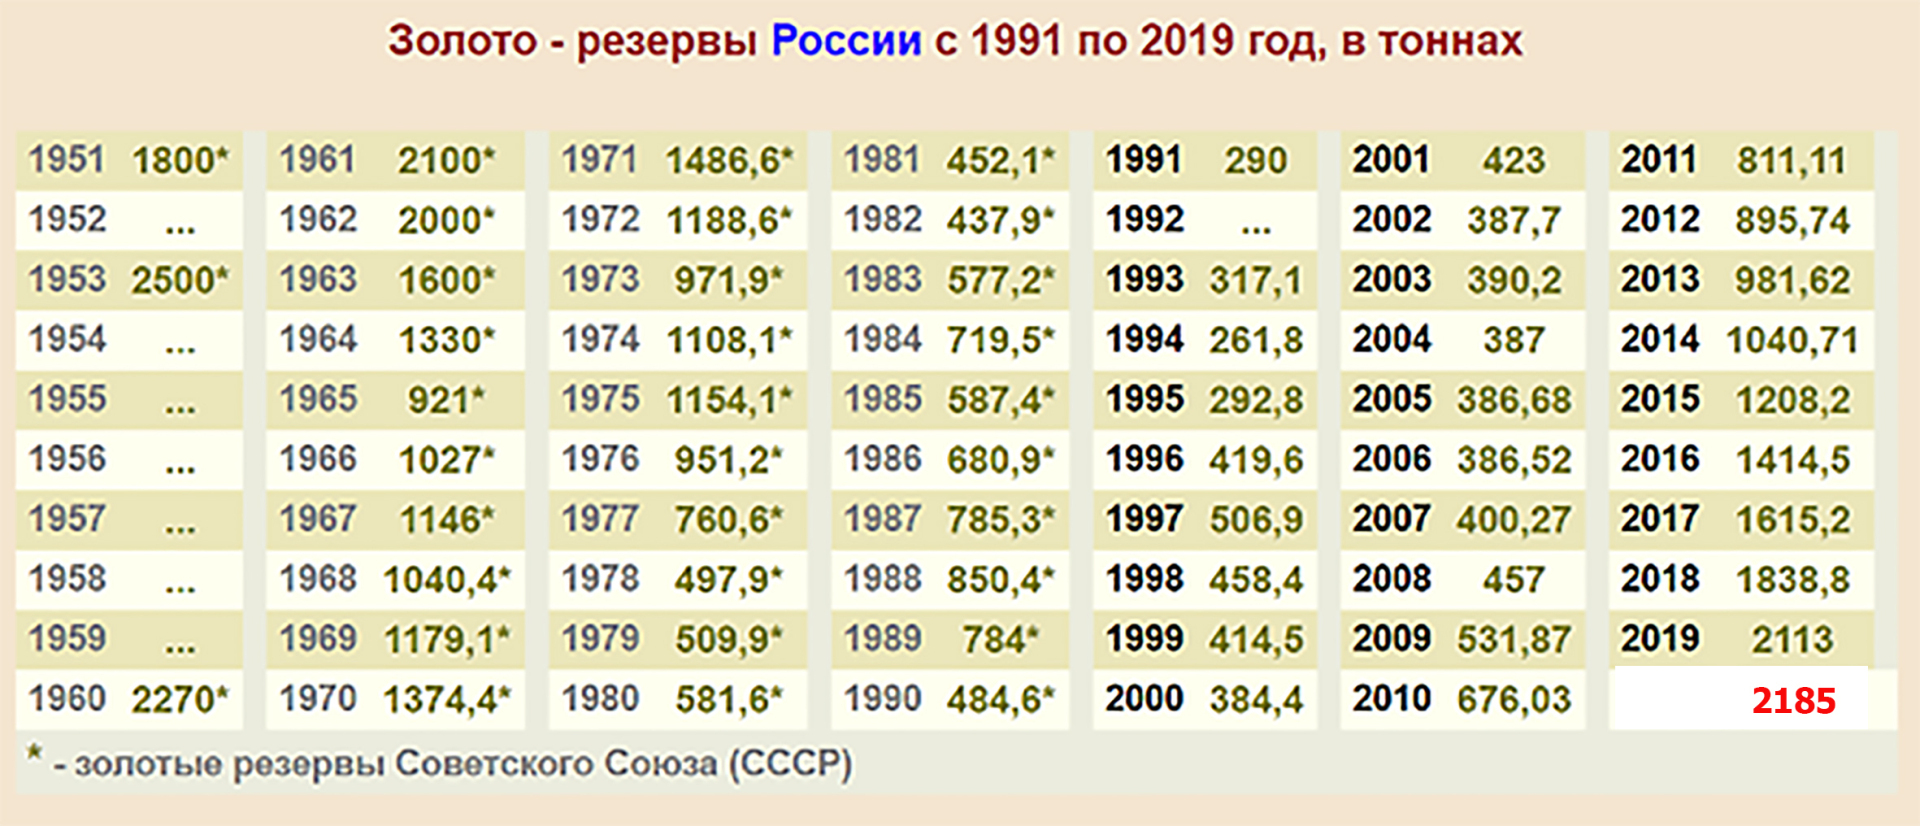 Золотой запас России по годам таблица